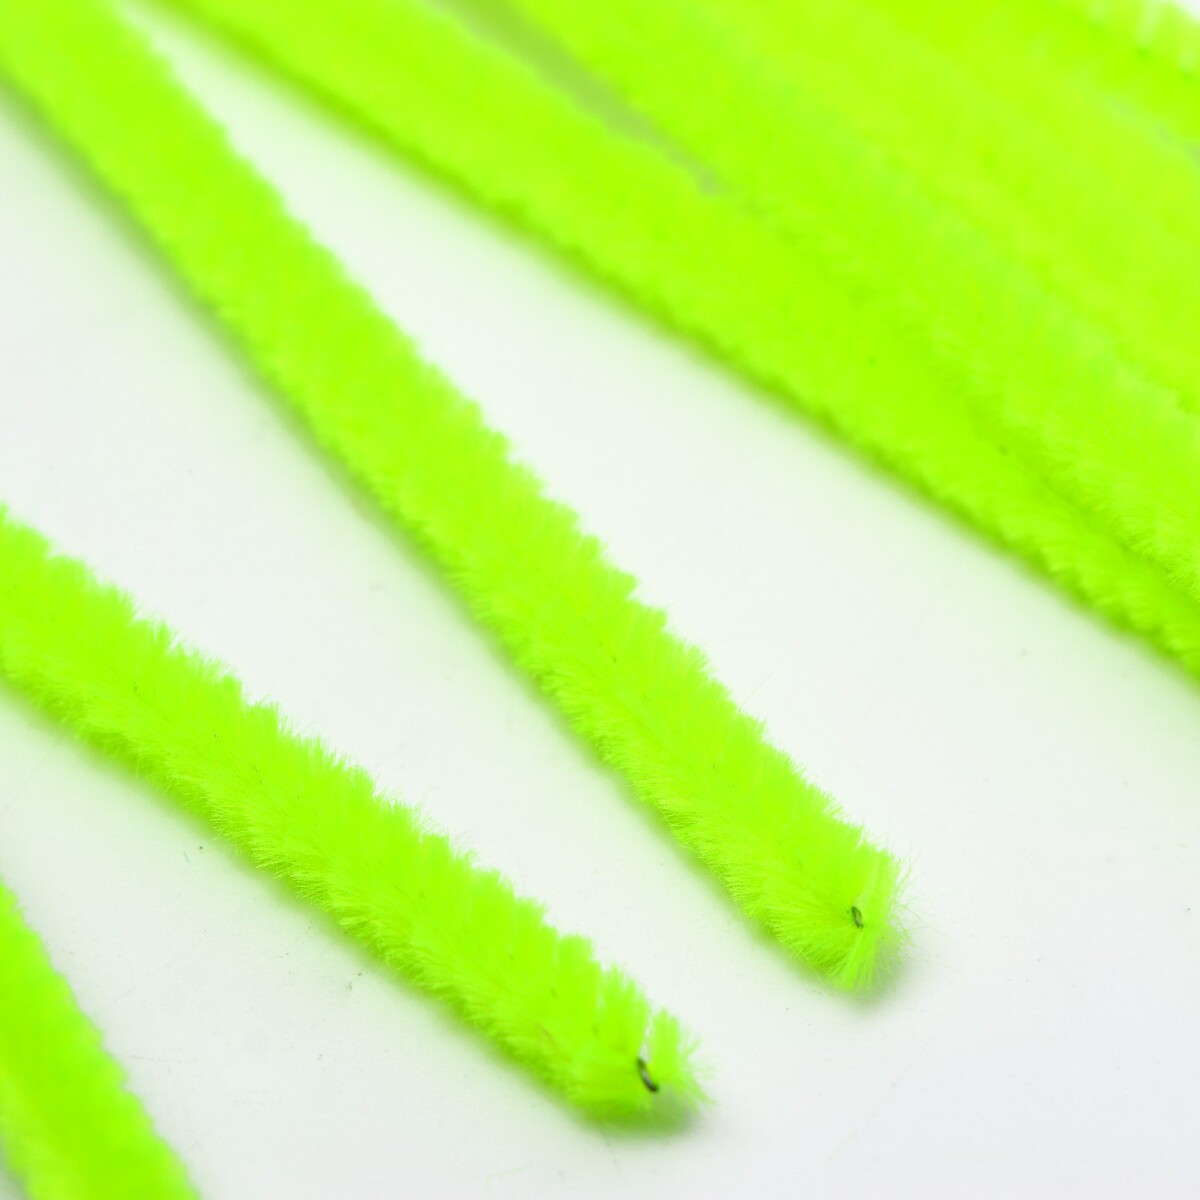 Проволока с ворсом для поделок и декора набор 50 шт., размер 1 шт. 30 × 0,6 см, цвет зеленый неон фетр для упаковок и поделок однотонный оливковый двусторонний зеленый рулон 1шт 50 см x 15 м